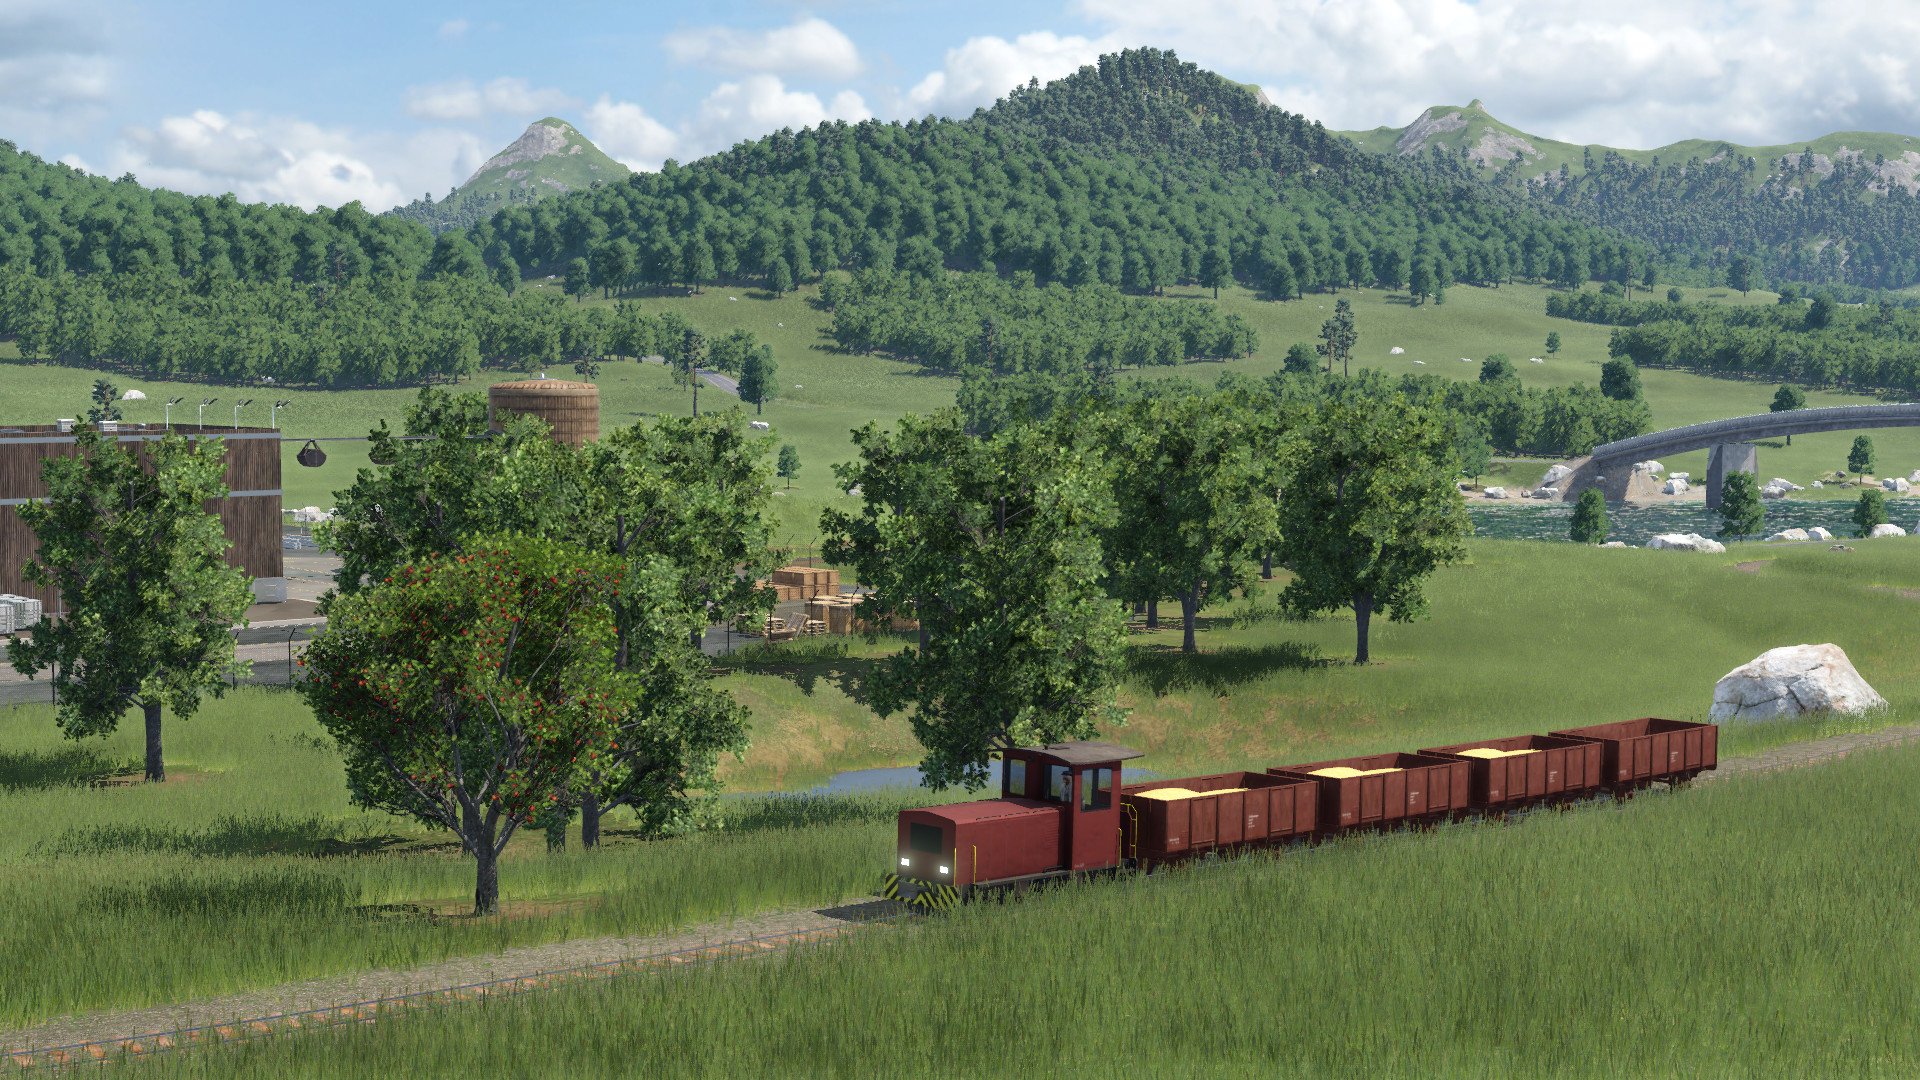 Werkbahn für den Getreidetransport